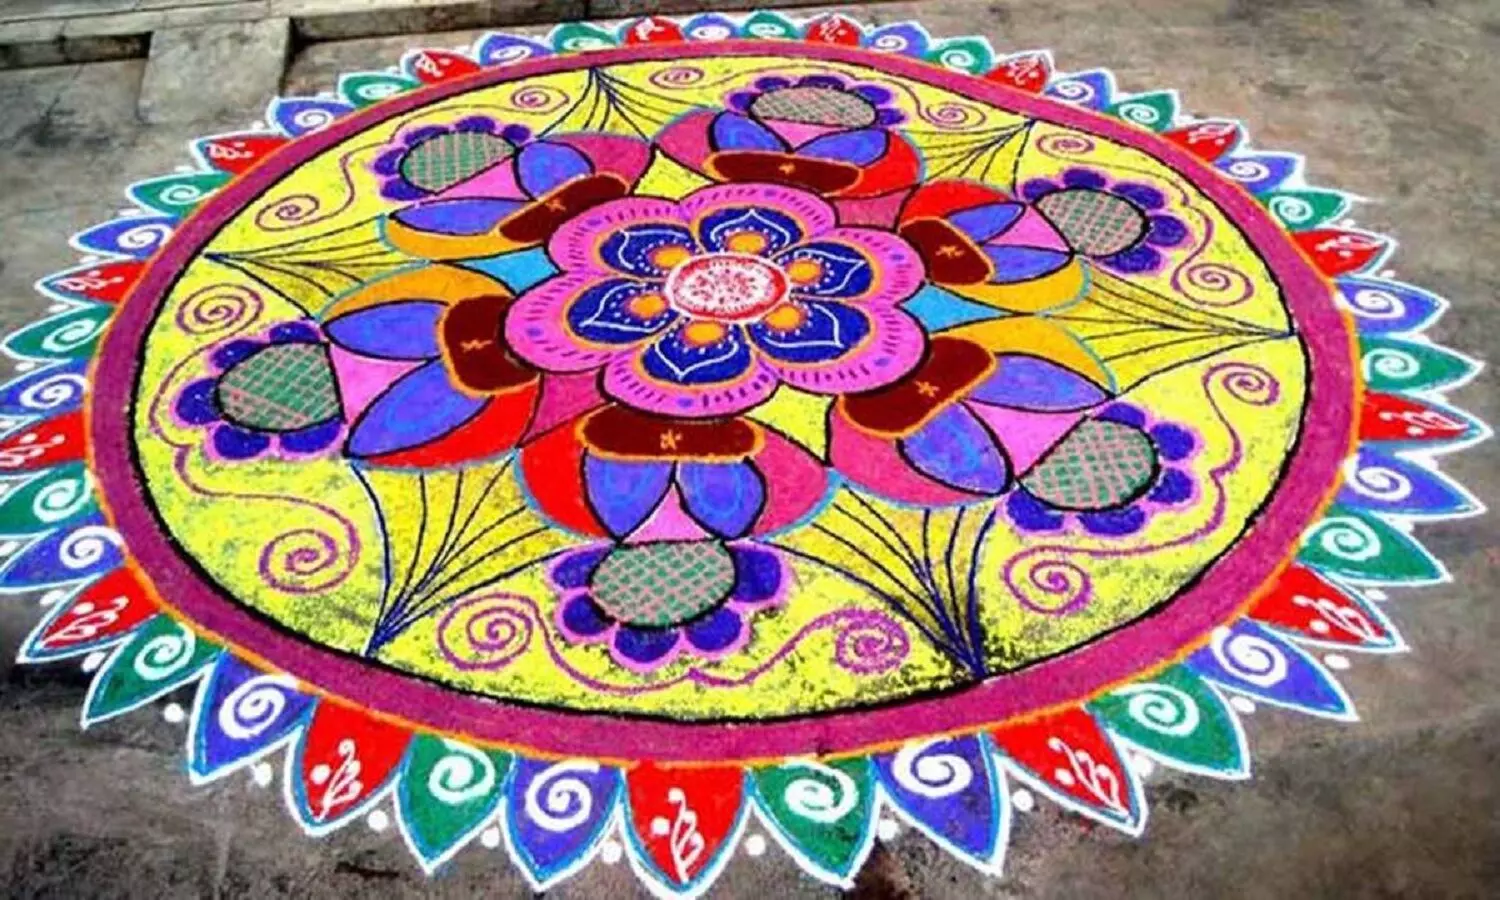 Rangoli in Diwali 2022: दीपावली में रंगोली क्यों बनाई जाती है? पहली बार रंगोली कब बनाई गई थी, जानें